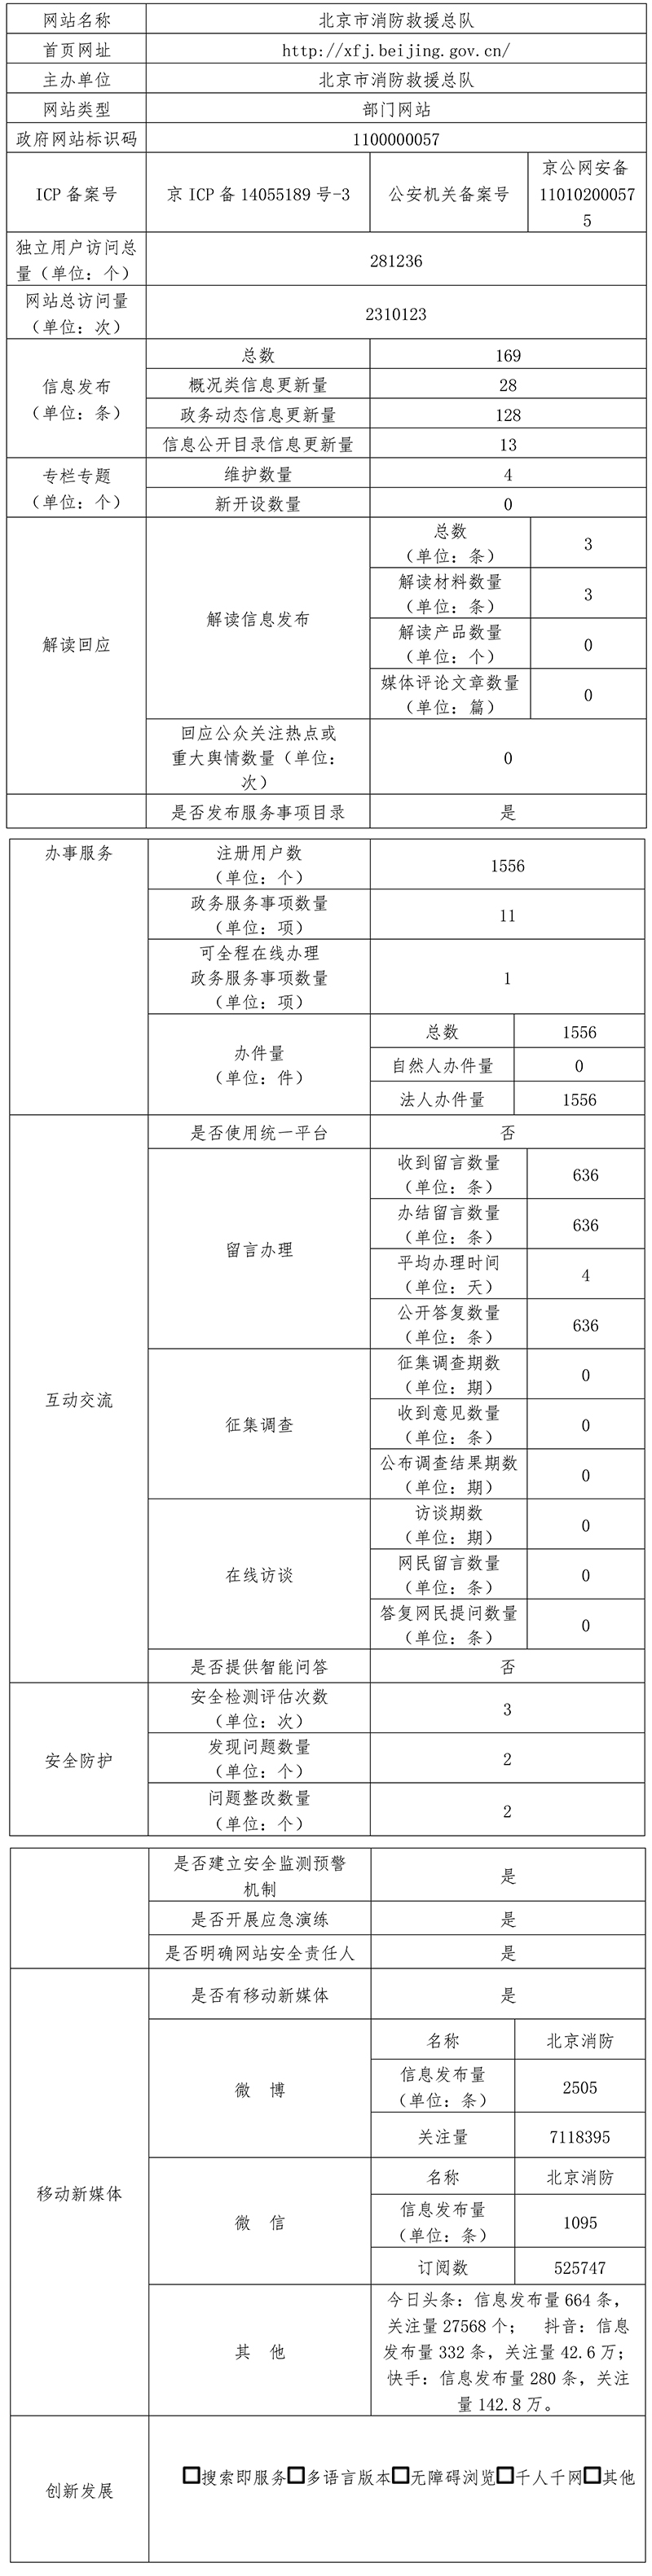 北京市消防救援總隊2021年政府網站年度工作報表